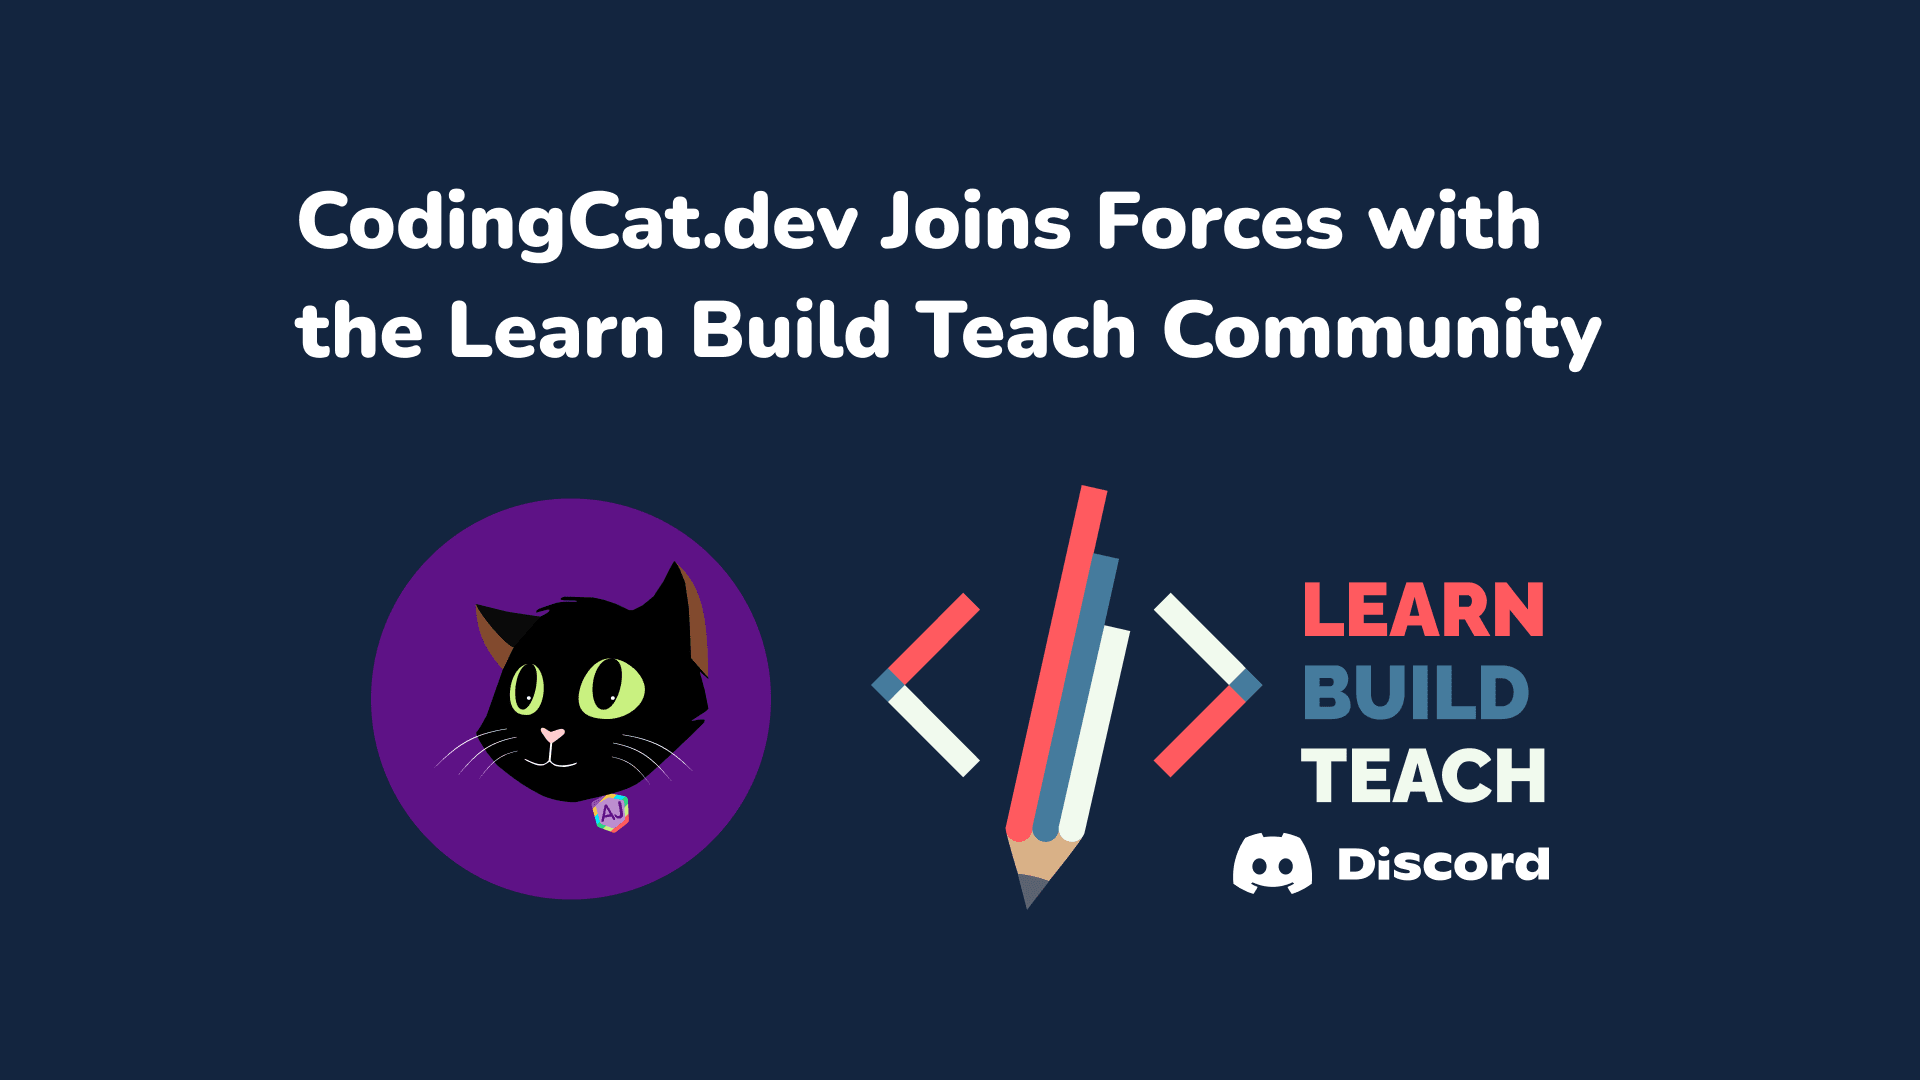 CodingCatDev is joining the Learn Build Teach Community